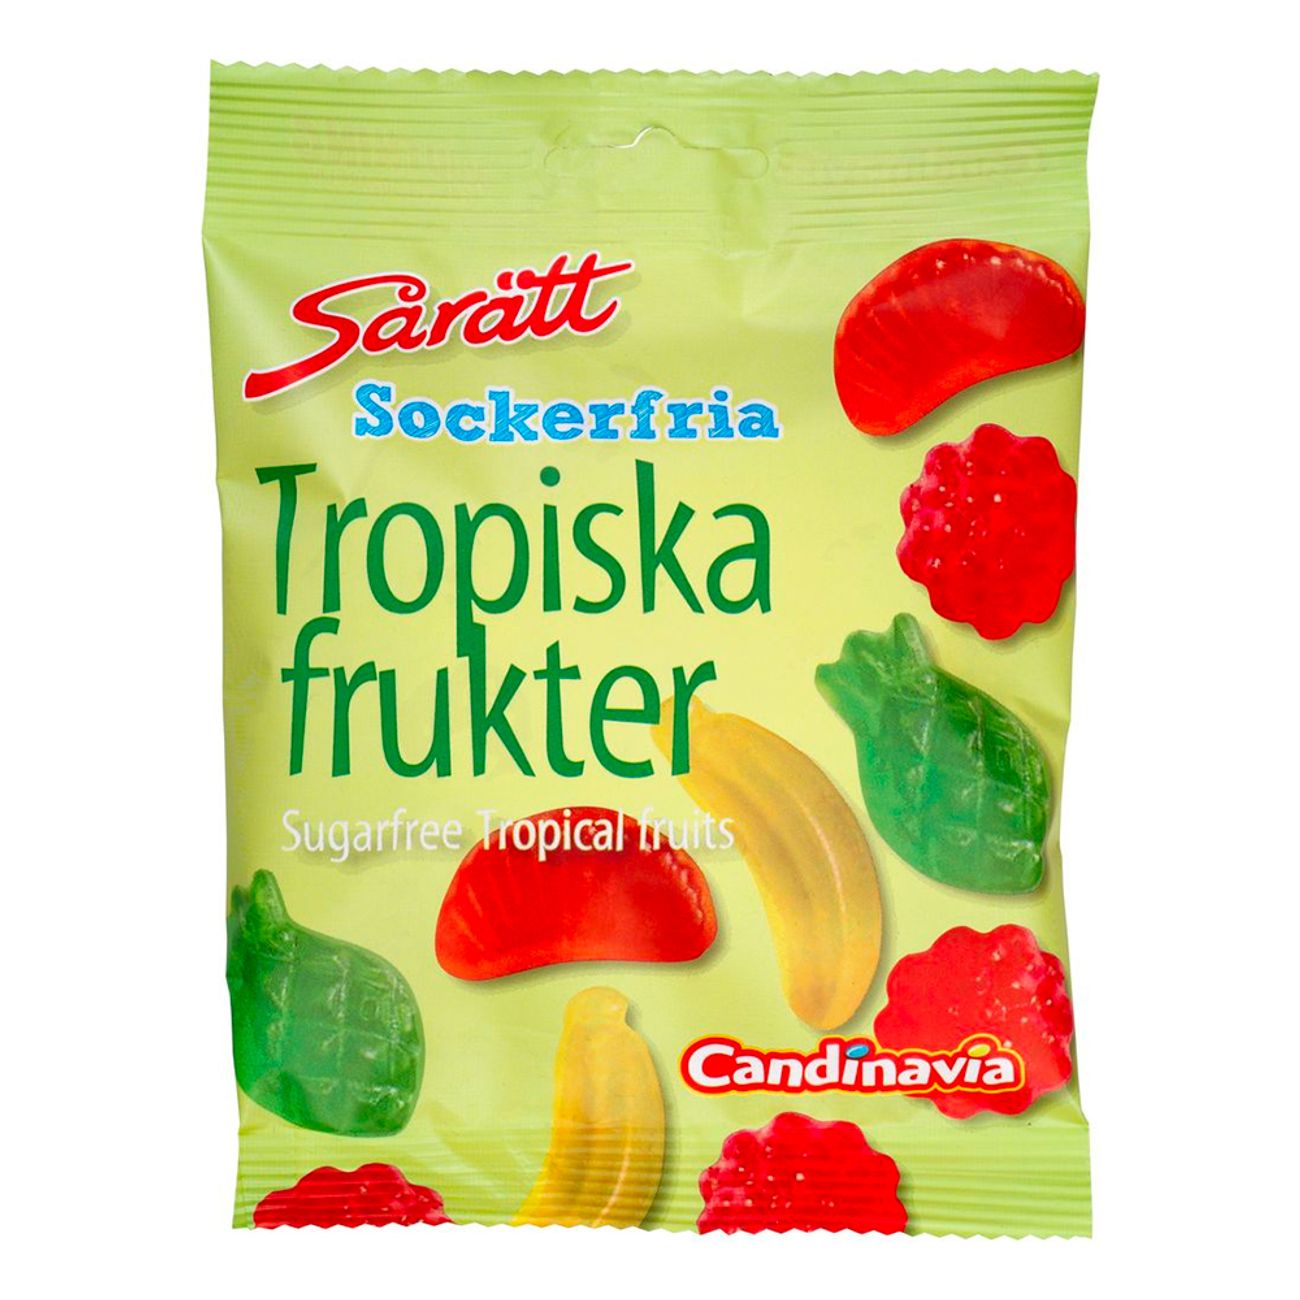 saratt-sockerfria-tropiska-frukter-79335-1